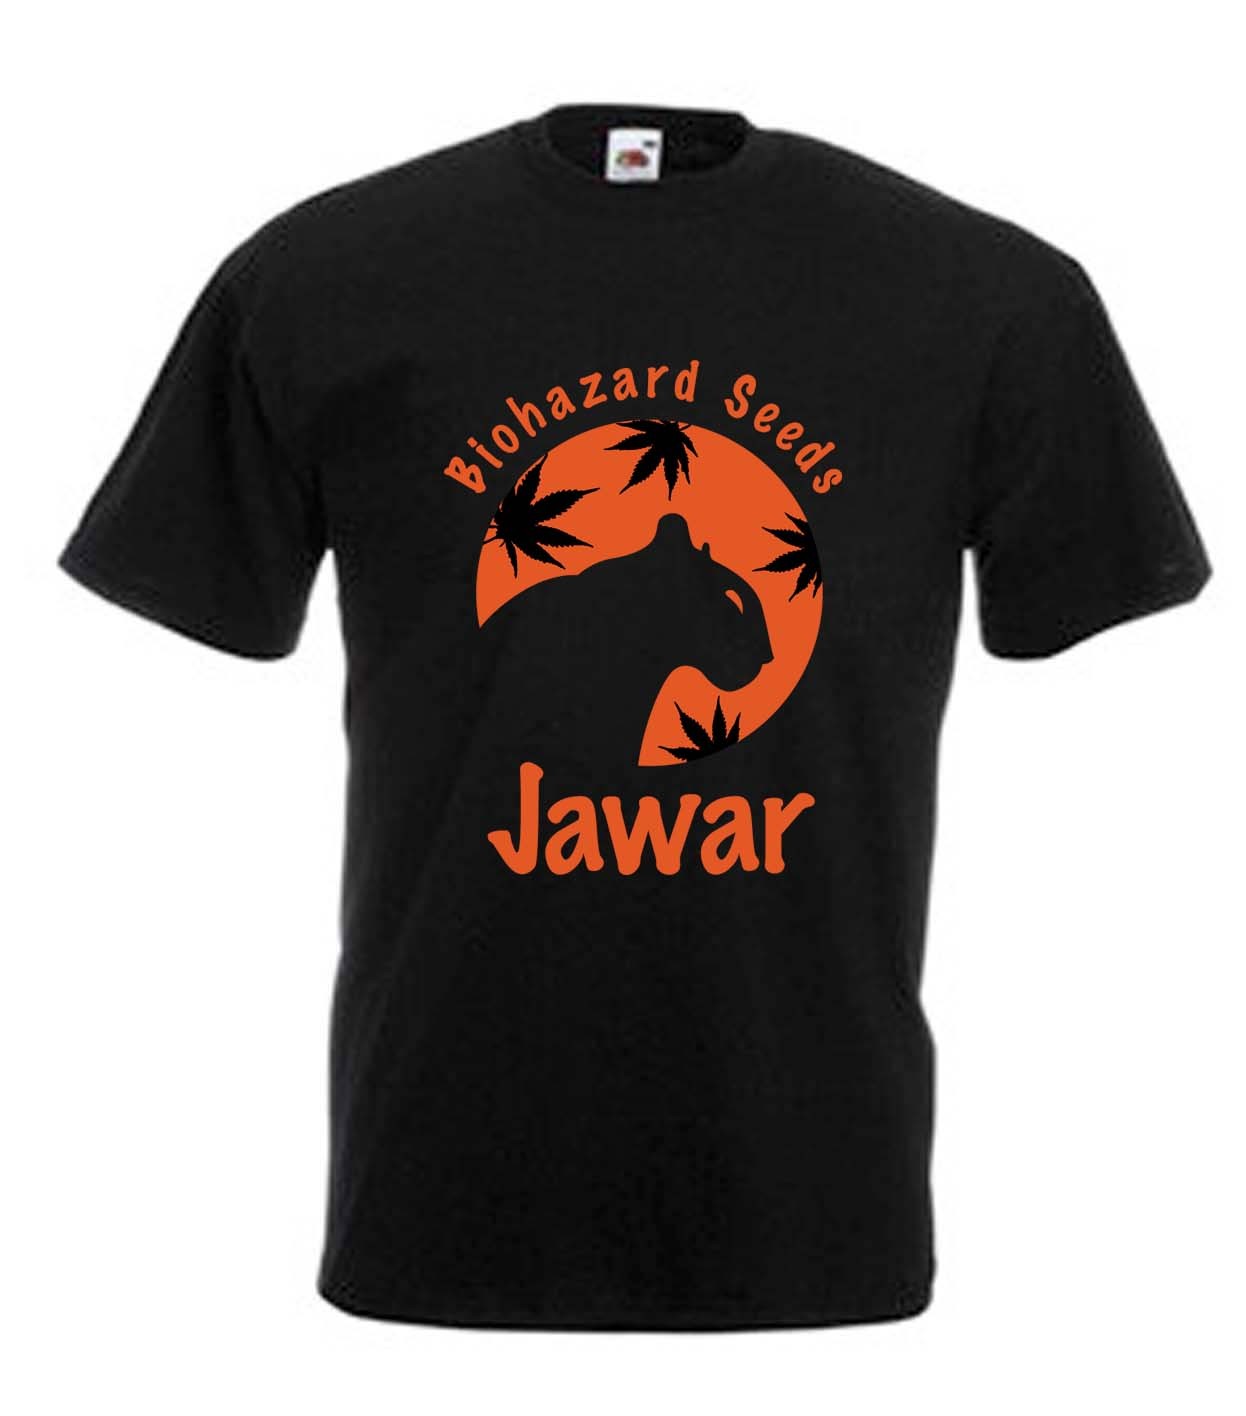 Camiseta Biohazard Seeds Jawar  0